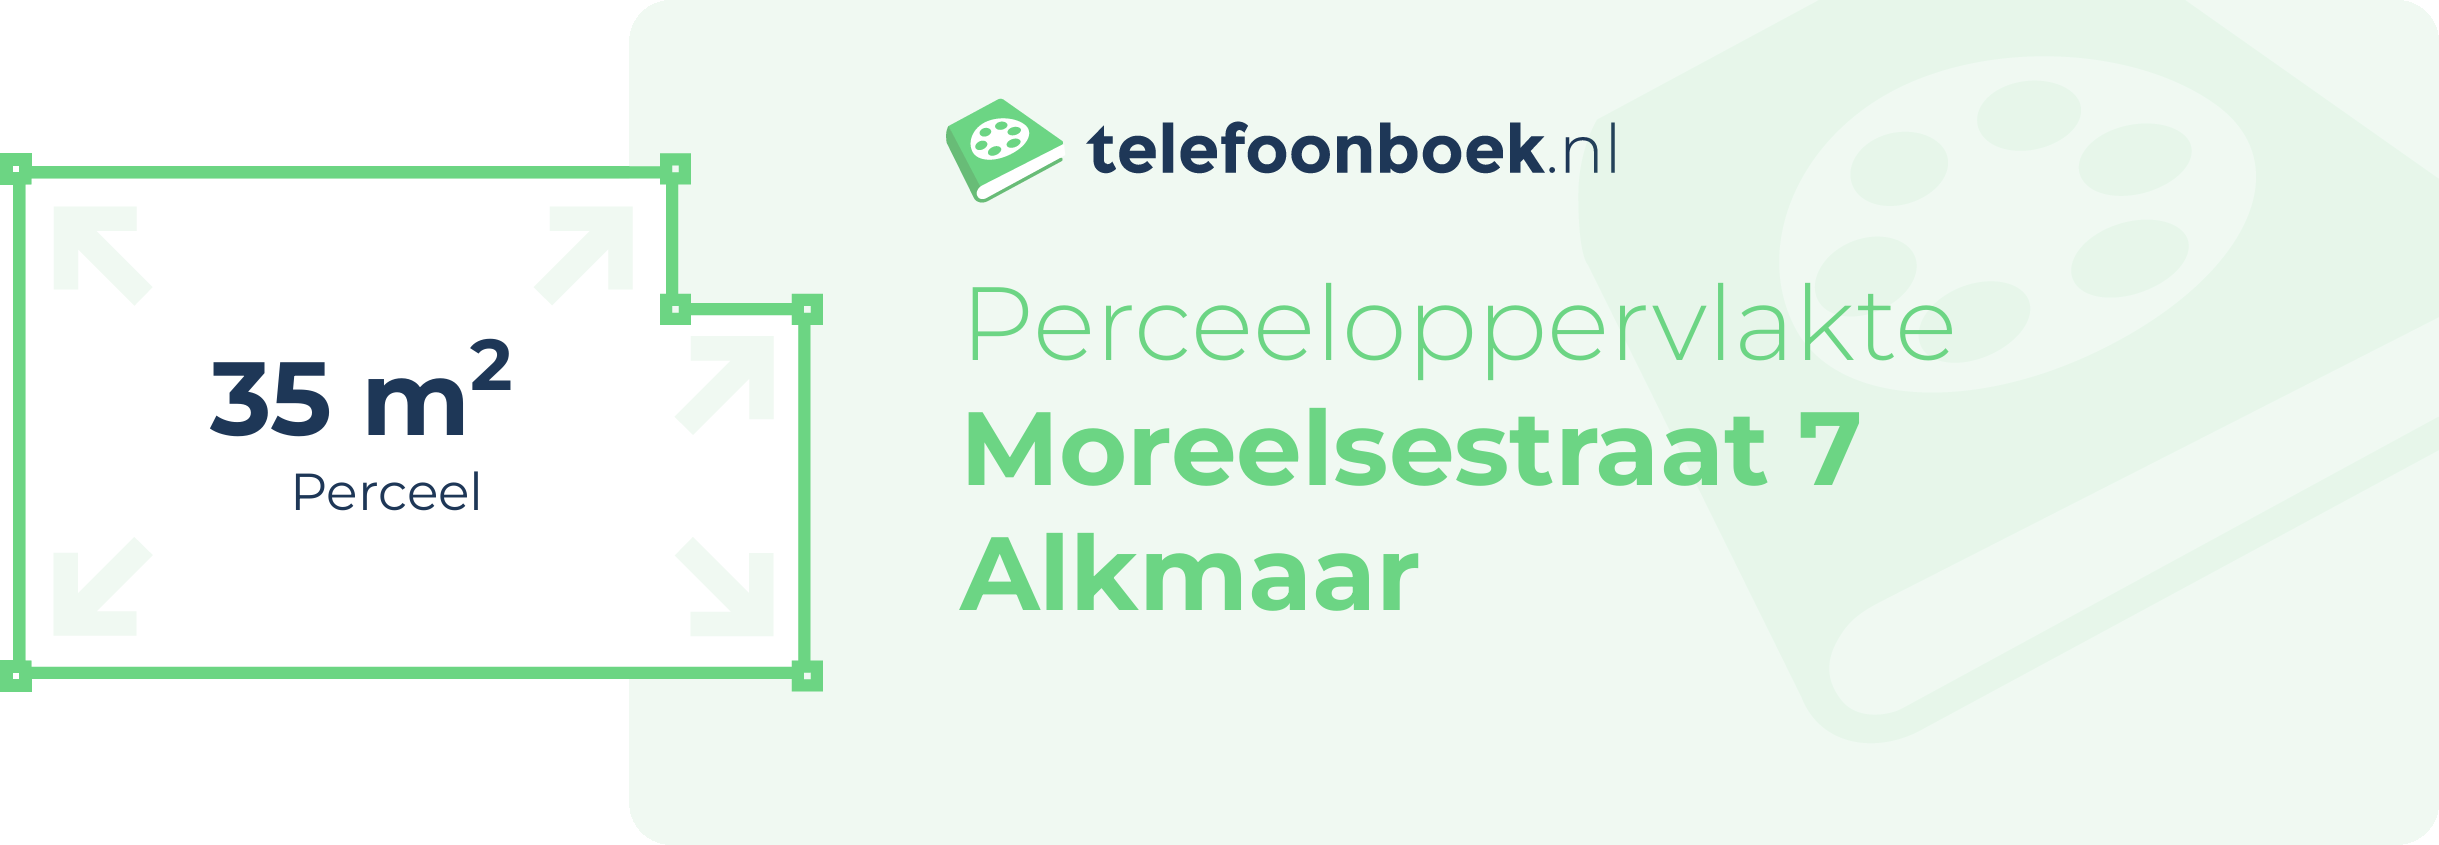 Perceeloppervlakte Moreelsestraat 7 Alkmaar